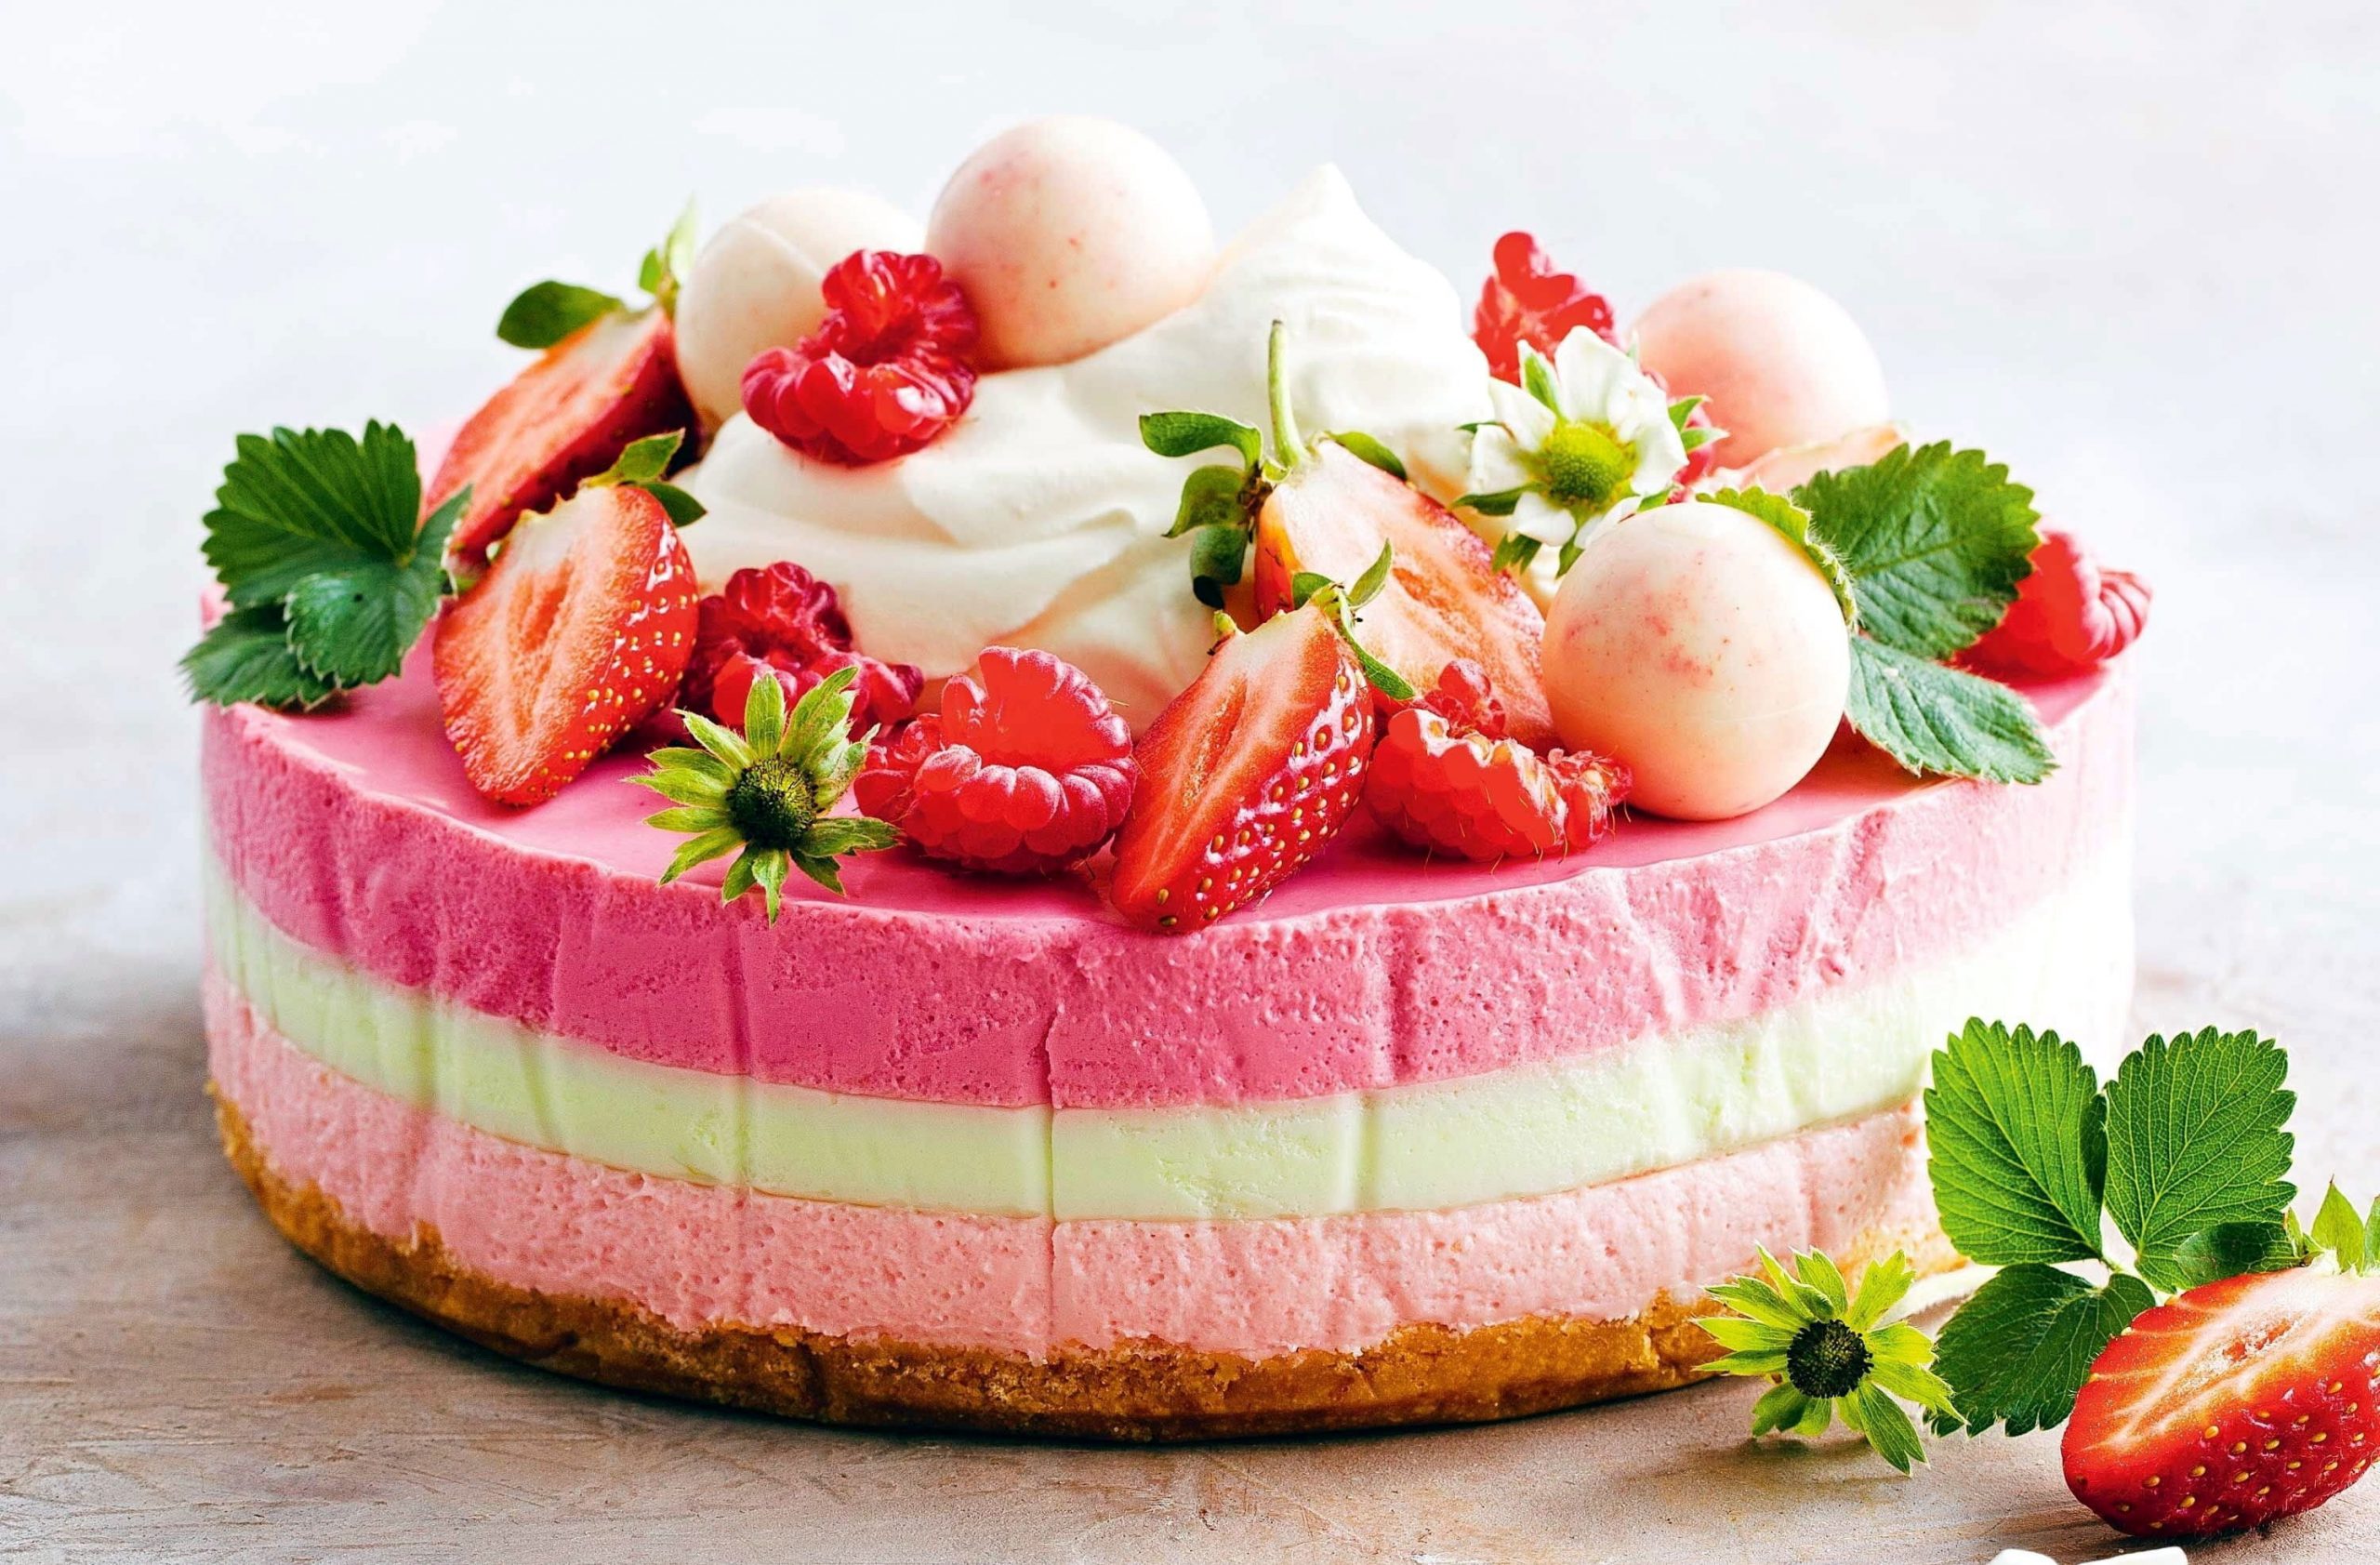 Cake wallpaper, fruit, strawberries, food, raspberries, food and drink